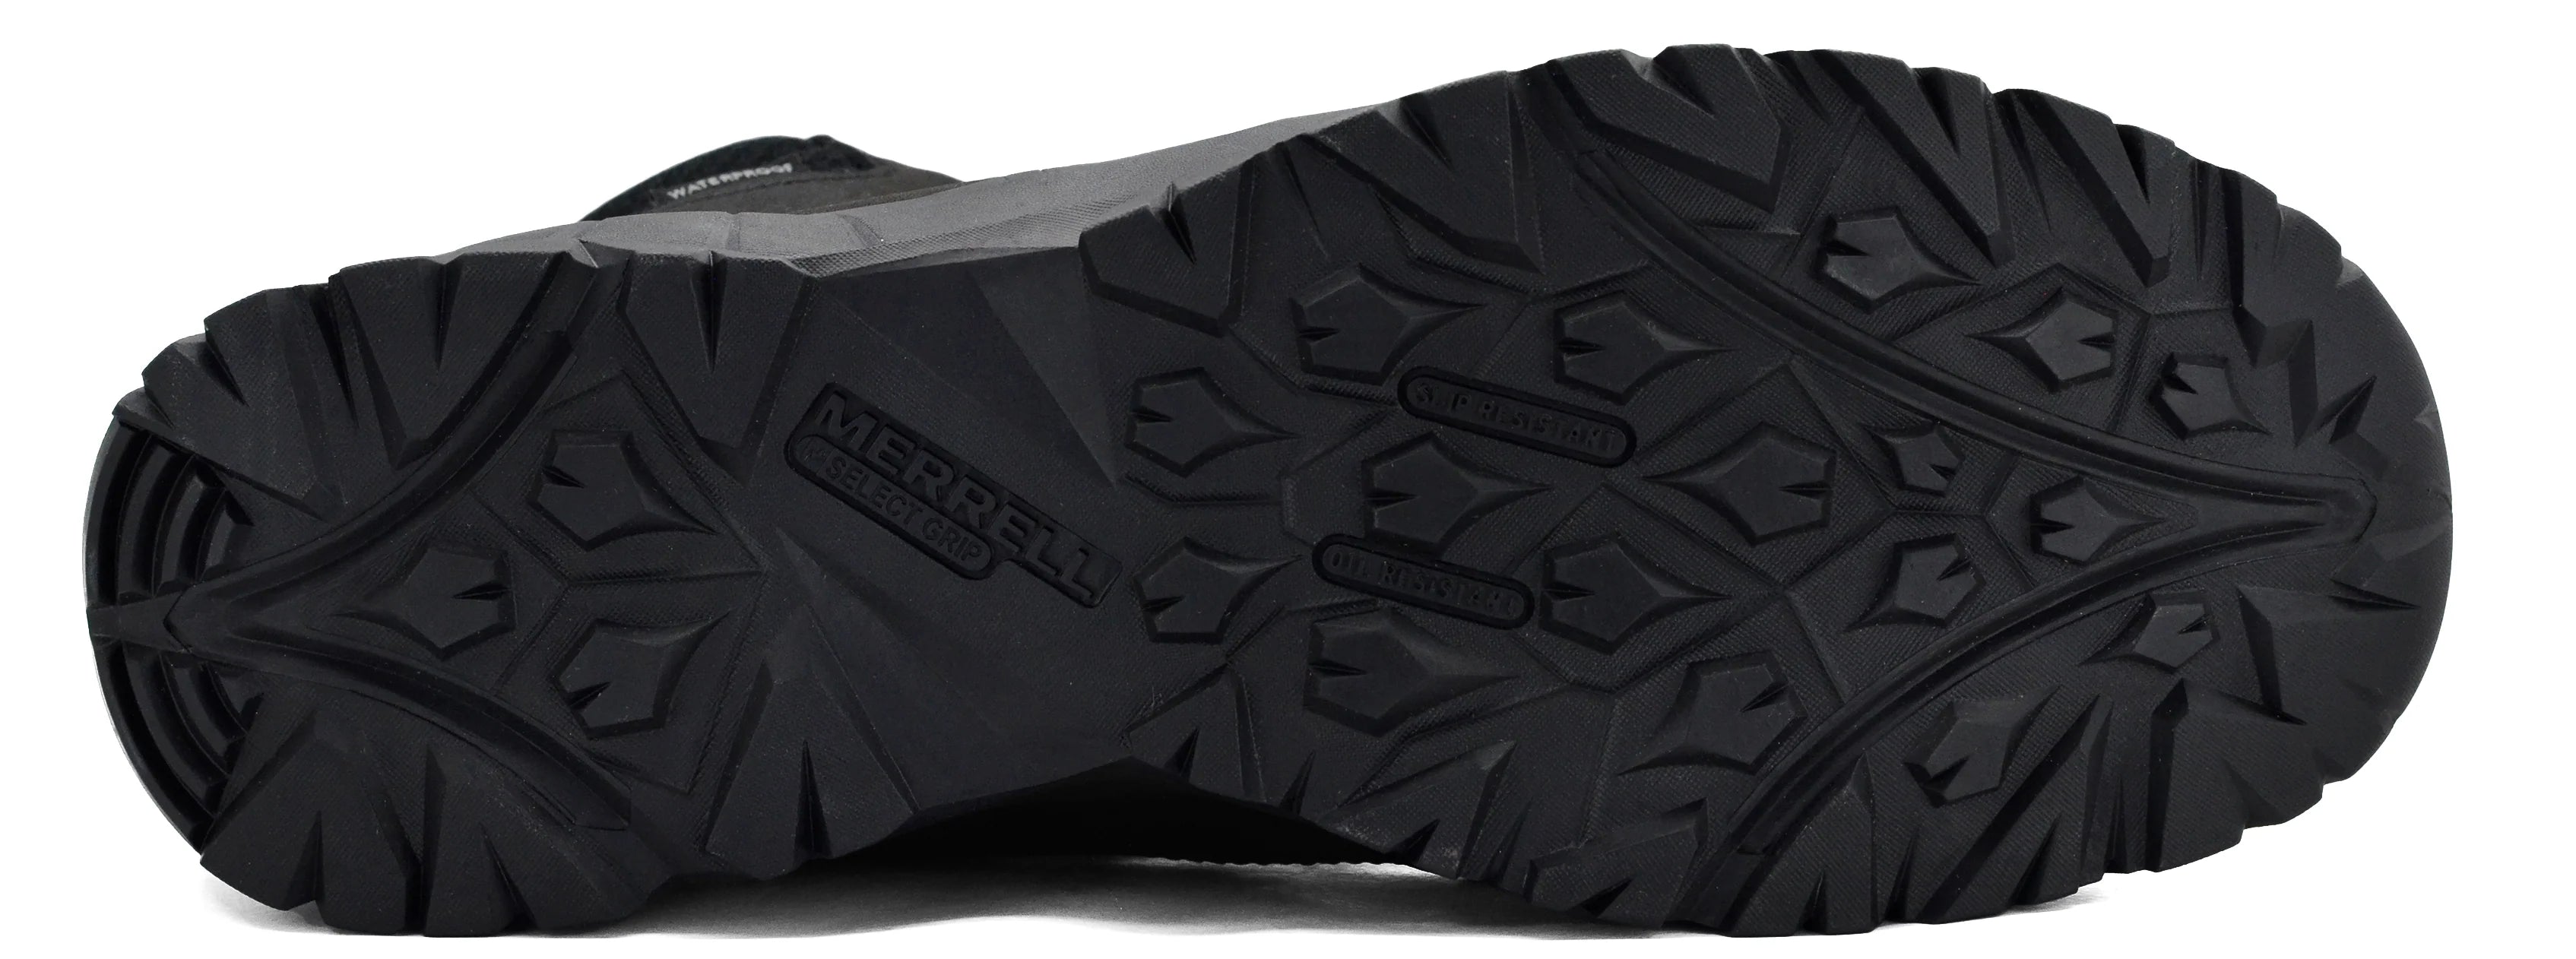 Merrell Men's Vego Mid Leather Waterproof (Black) #ME 07